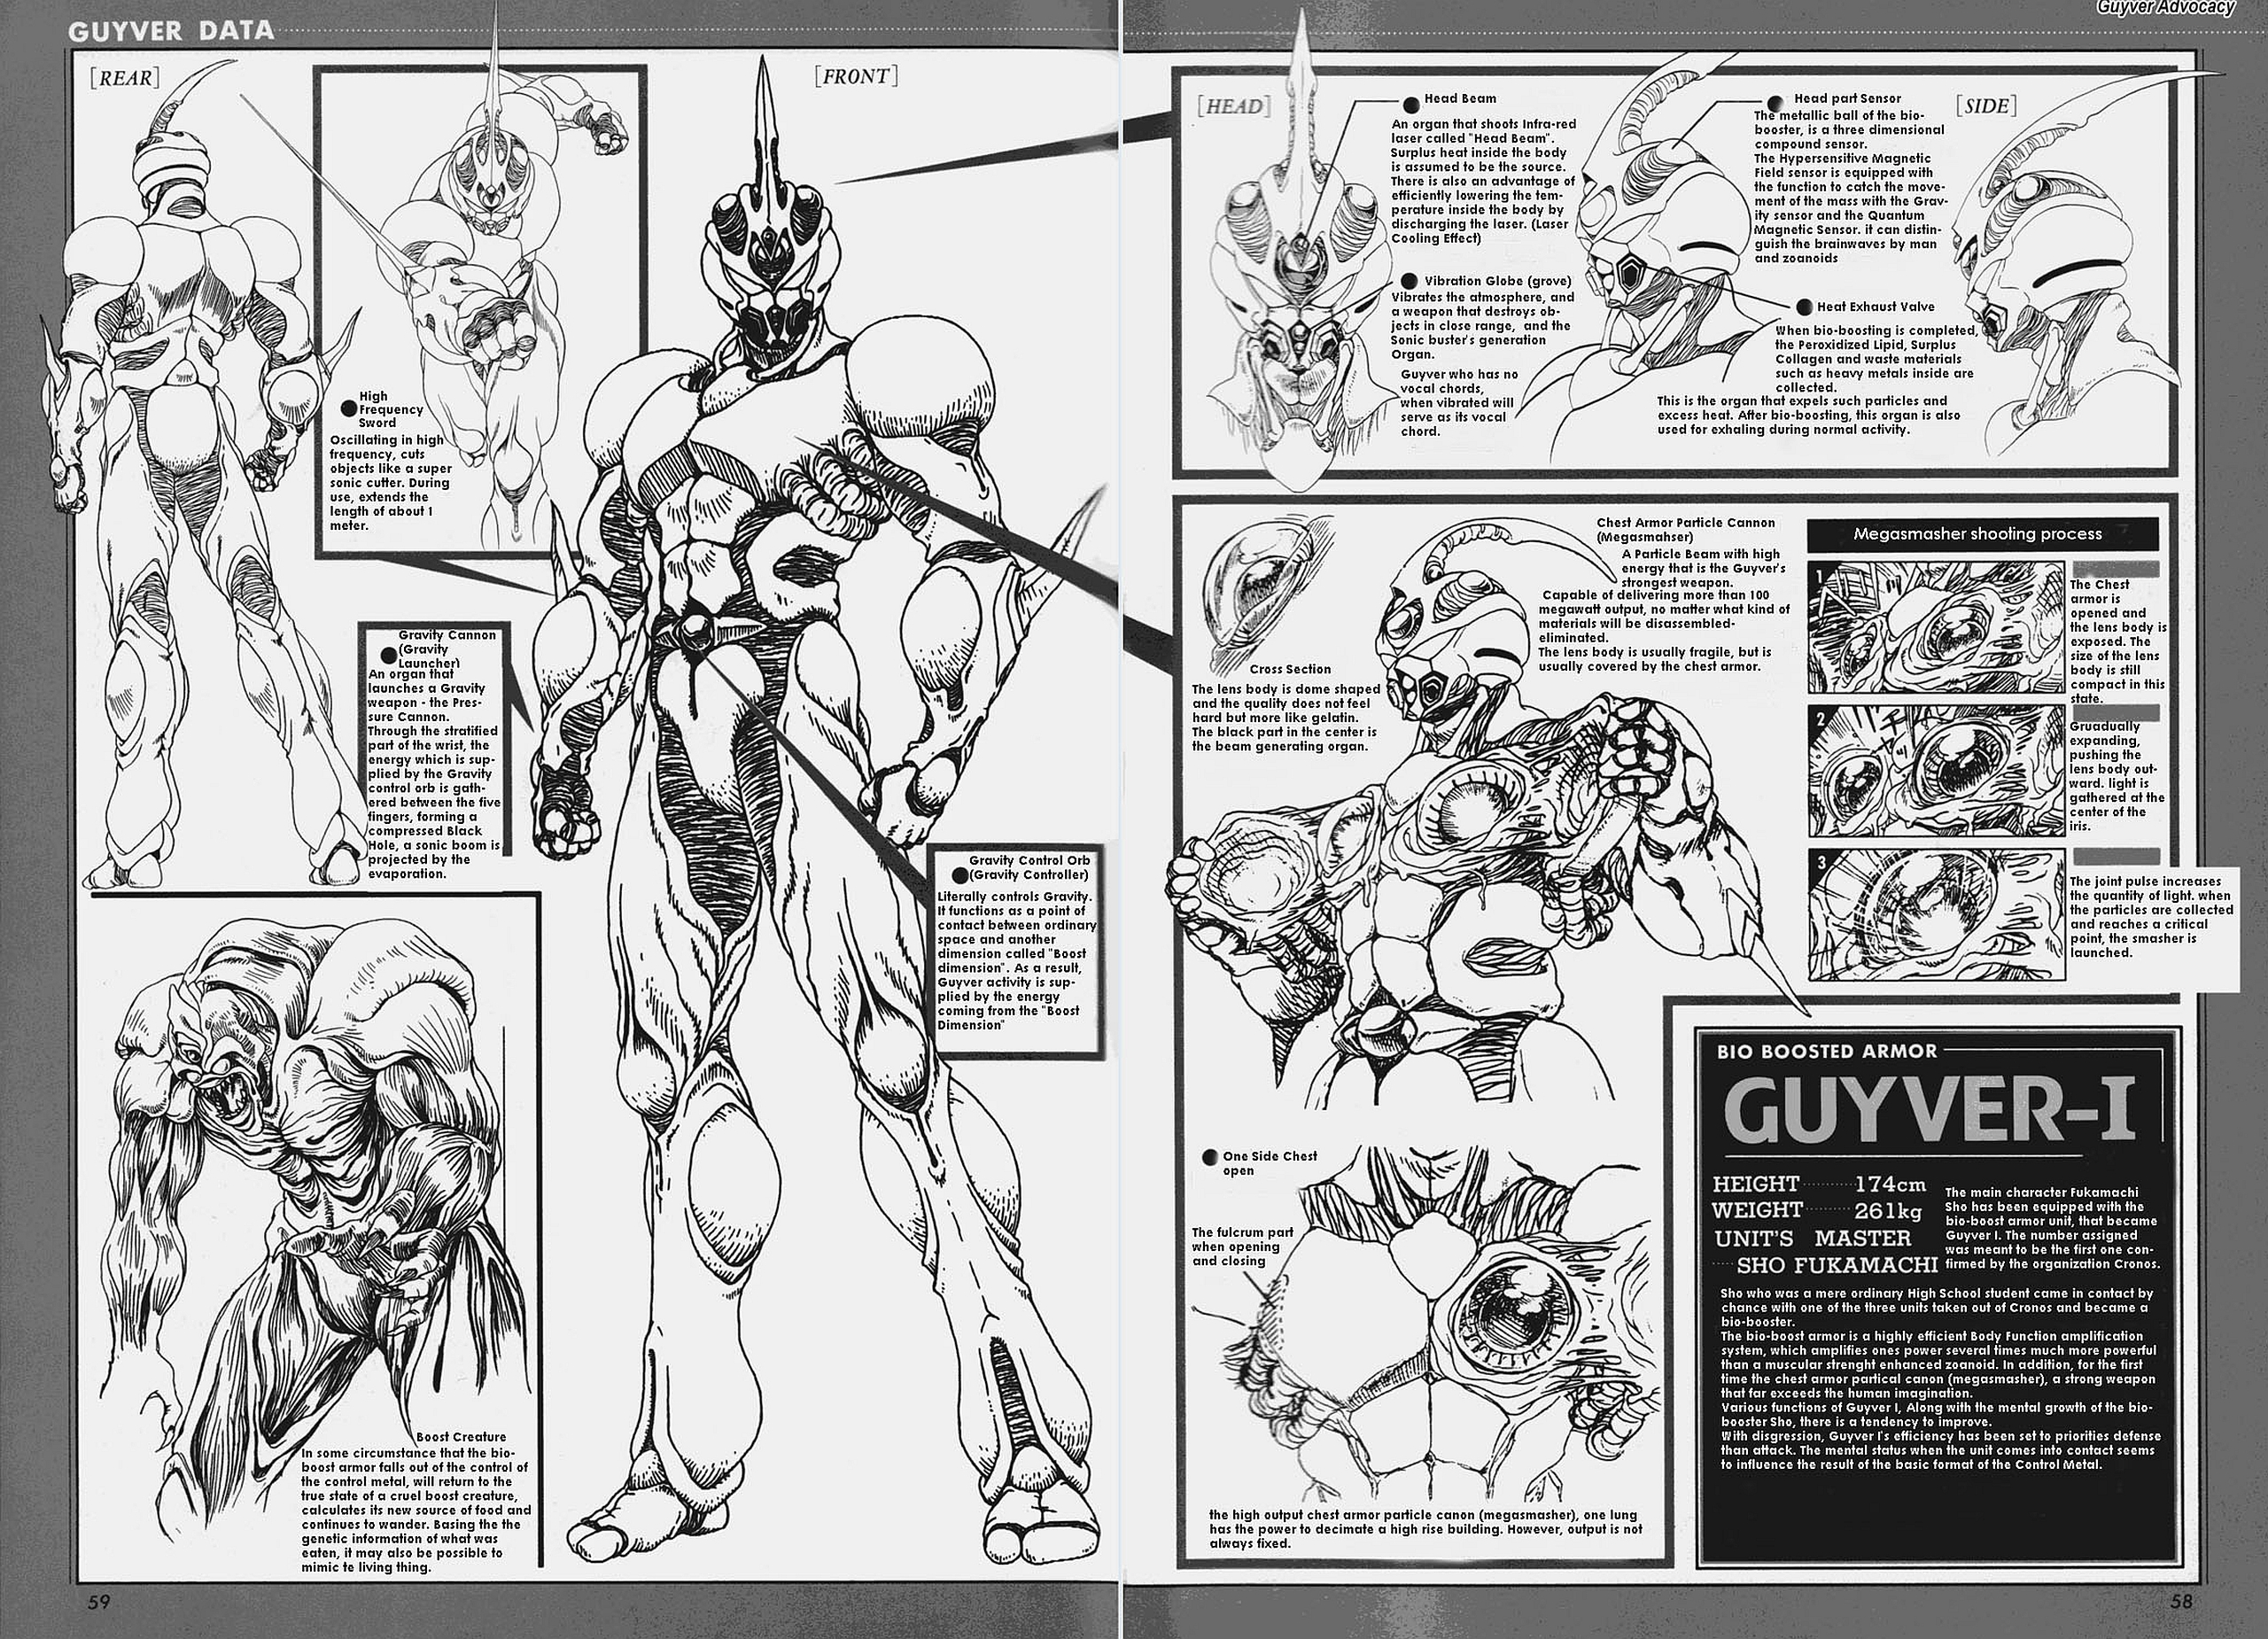 Anime Guyver The Bioboosted Armor Guyver II ver Action Figure Model | eBay